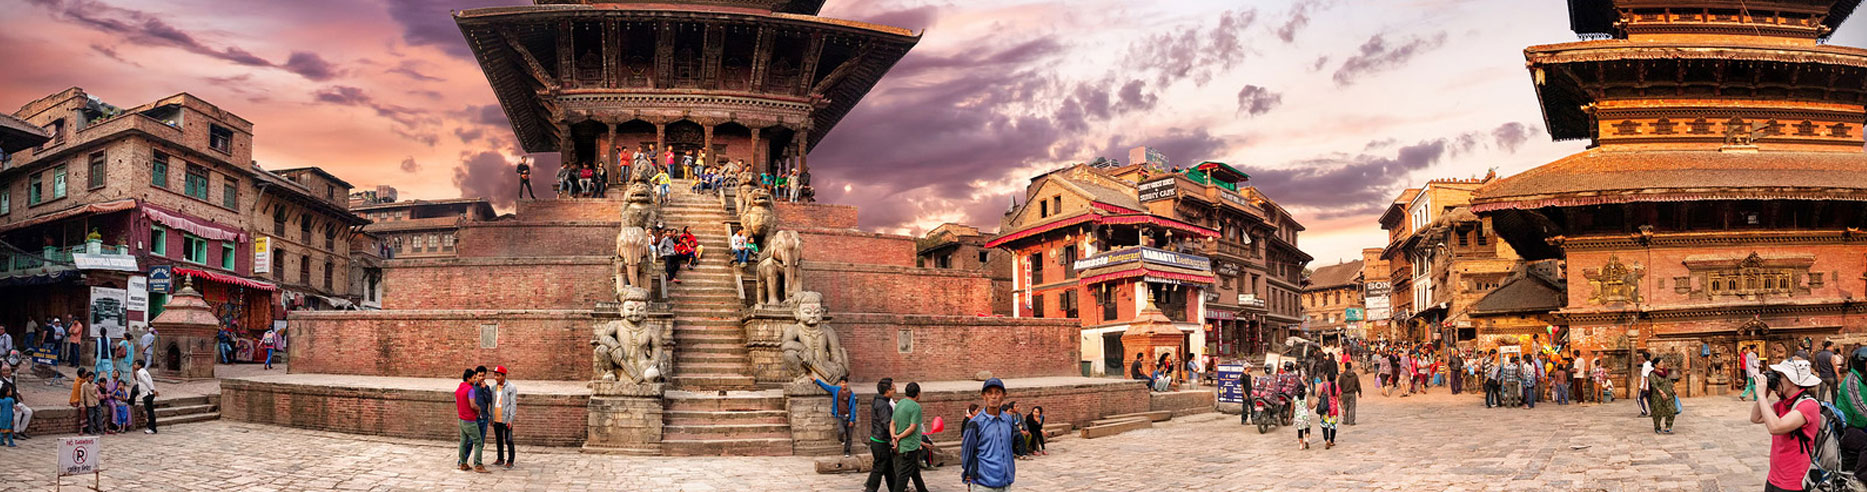 Gorakhpur Pokhara Kathmandu Jankpur Gaya